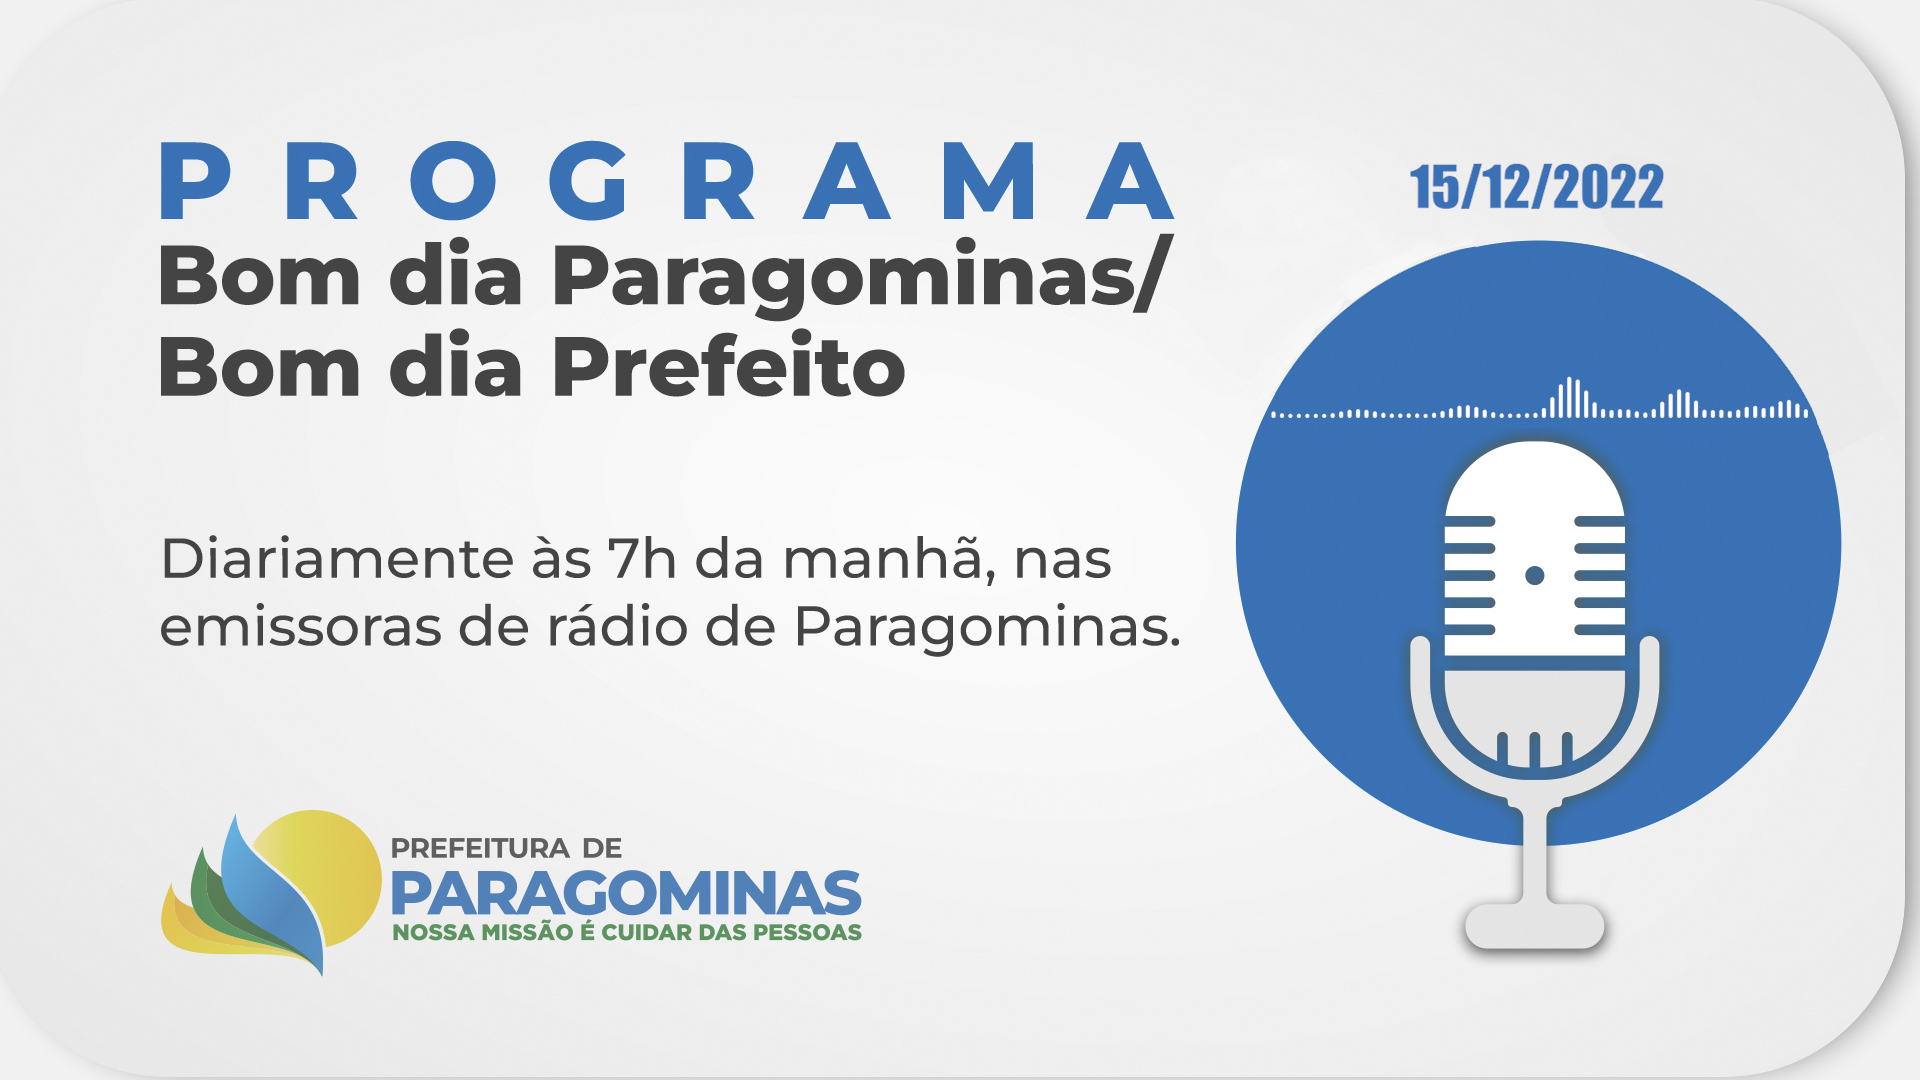 BOM DIA PARAGOMINAS / BOM DIA PREFEITO - 15 DE DEZEMBRO DE 2022 -  Prefeitura Municipal de Paragominas | Gestão 2021-2024